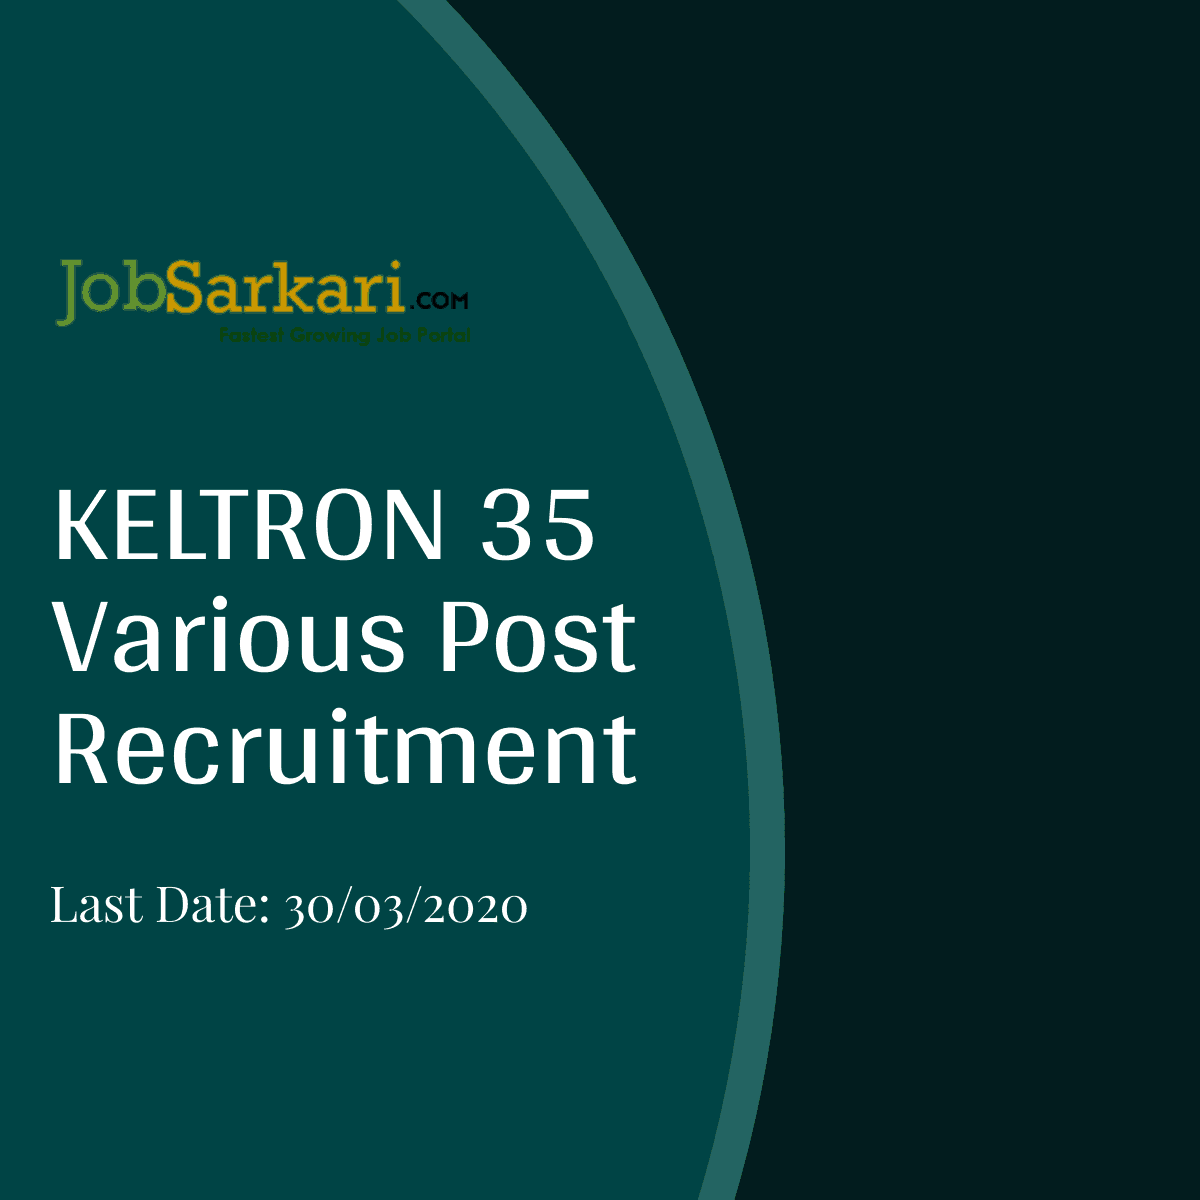 KELTRON Recruitment 2020 For Various Post